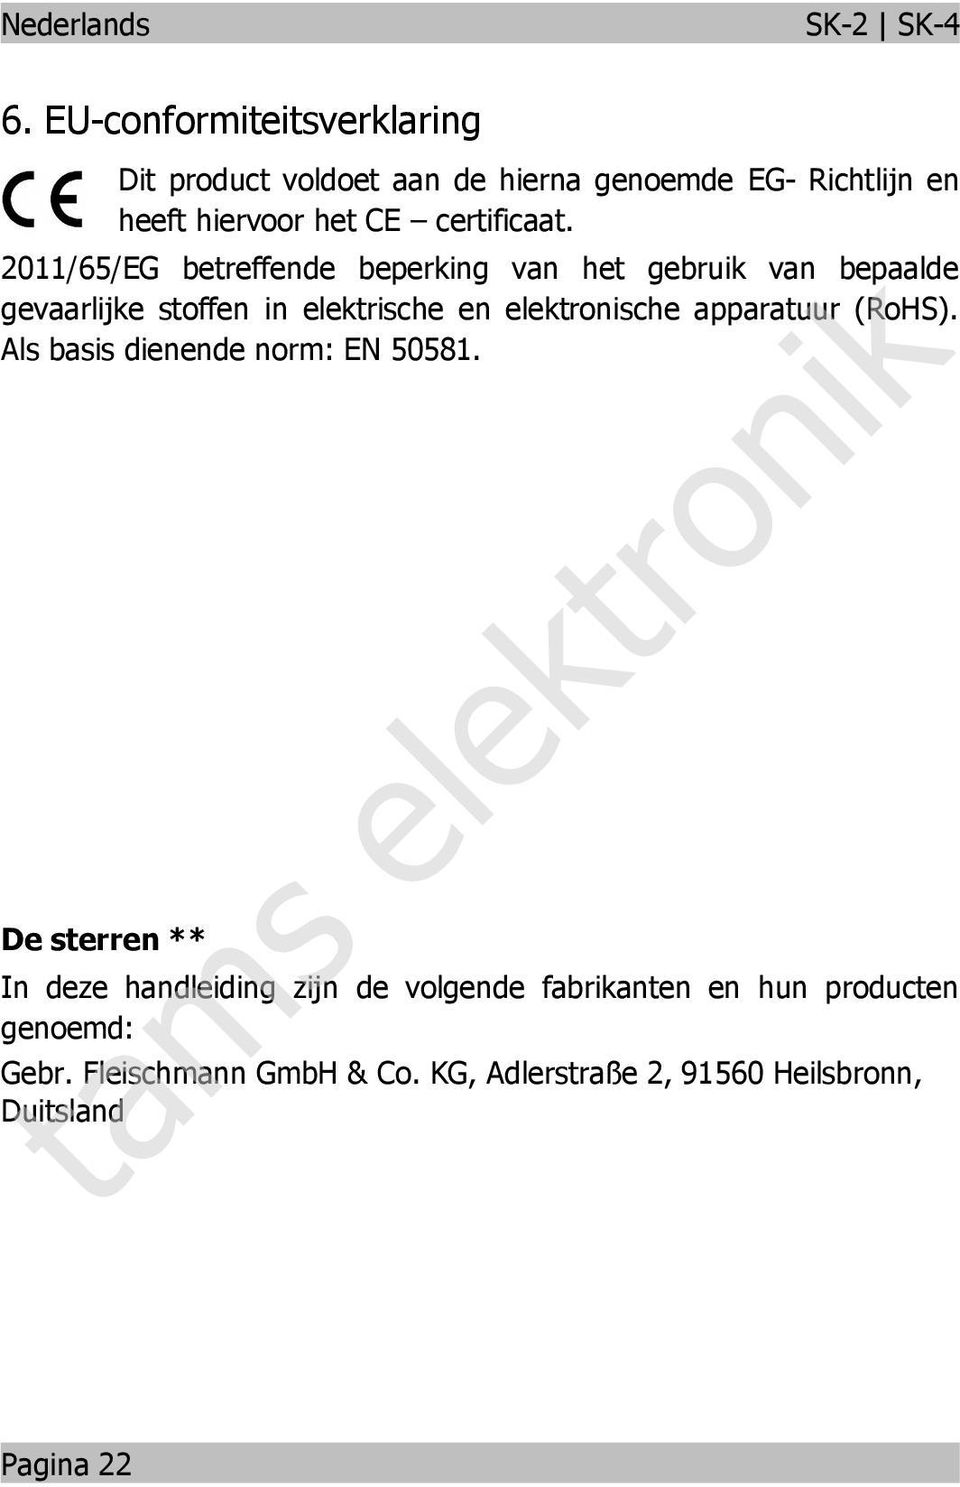 2011/65/EG betreffede beperkig va het gebruik va bepaalde gevaarlijke stoffe i elektrische e elektroische apparatuur